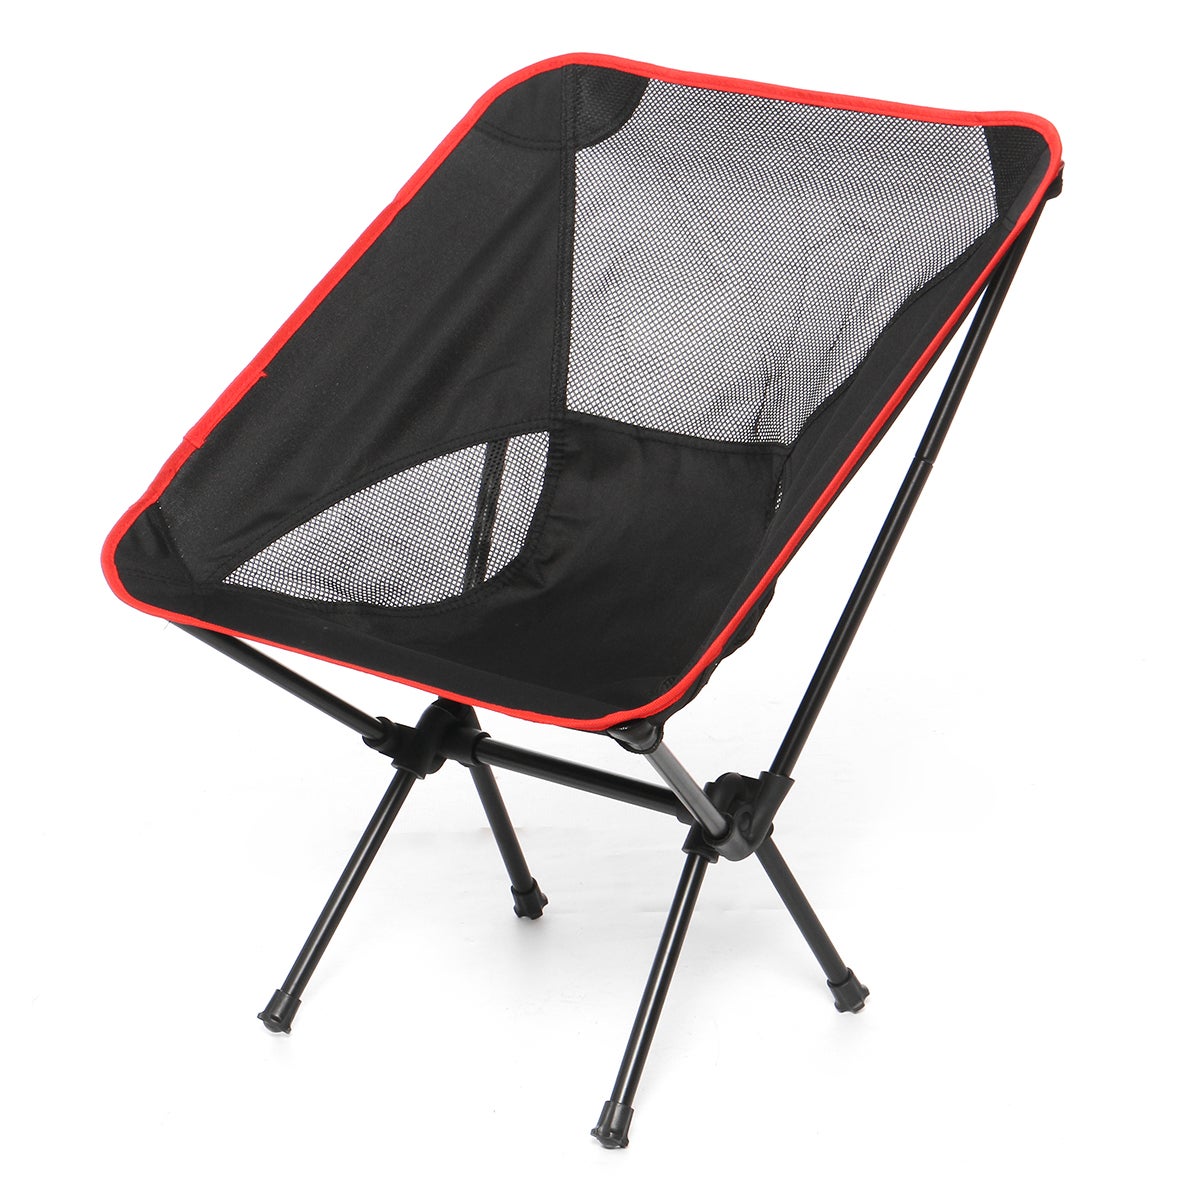 Casa Pro ® 2x da campeggio sedia pieghevole sedia sedia da giardino sedia da pesca sedia Angel Nero 